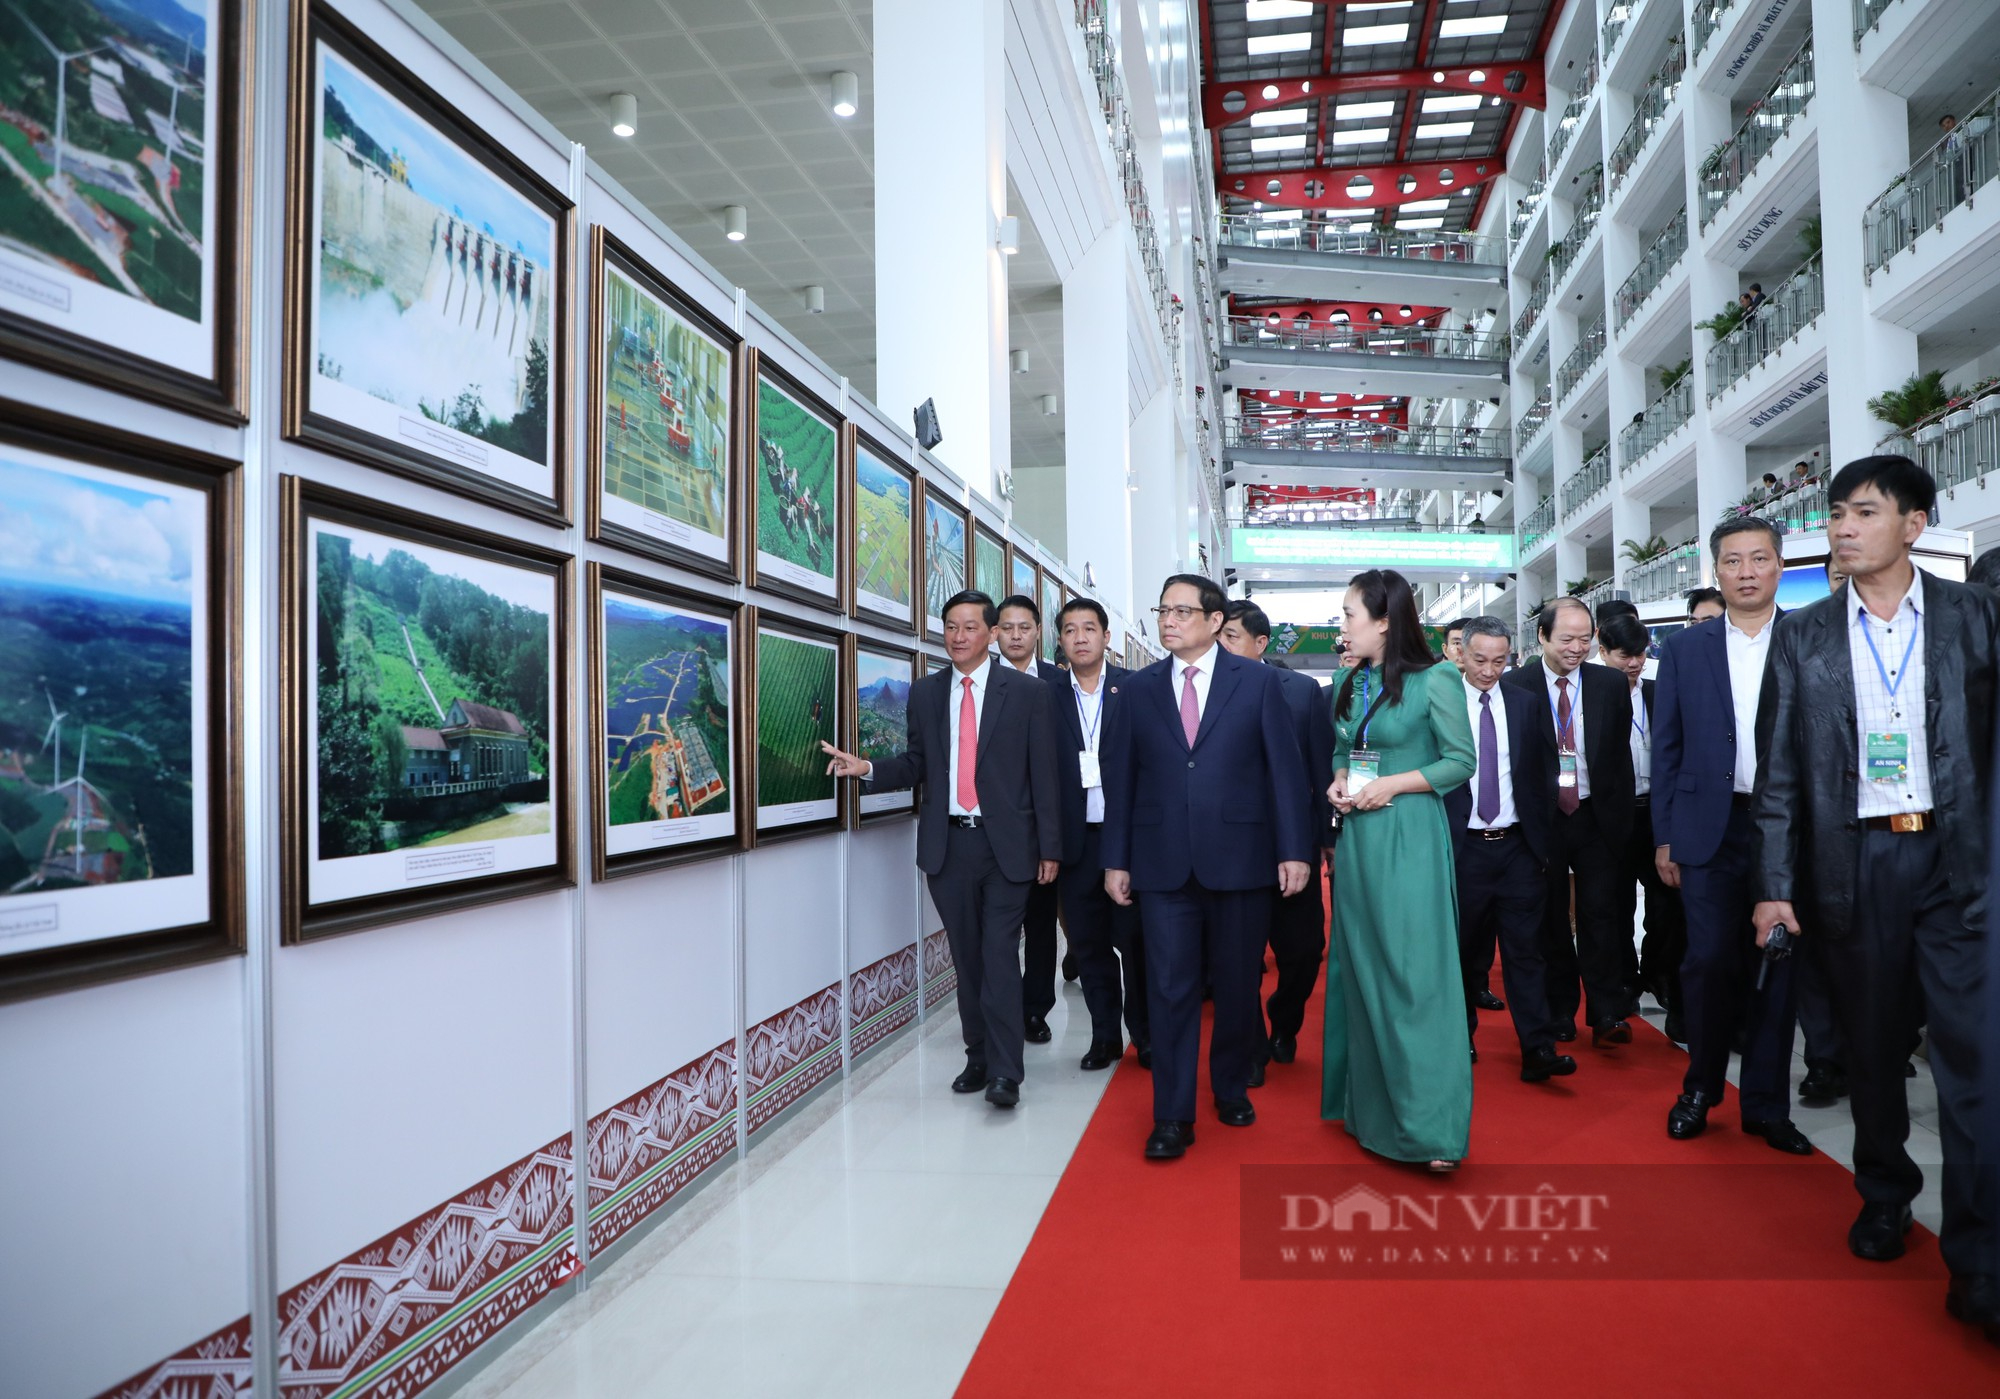 Thủ tướng Chính phủ Phạm Minh Chính cắt băng khai mạc triển lãm ảnh Tây Nguyên xanh hài hòa - bền vững - Ảnh 2.